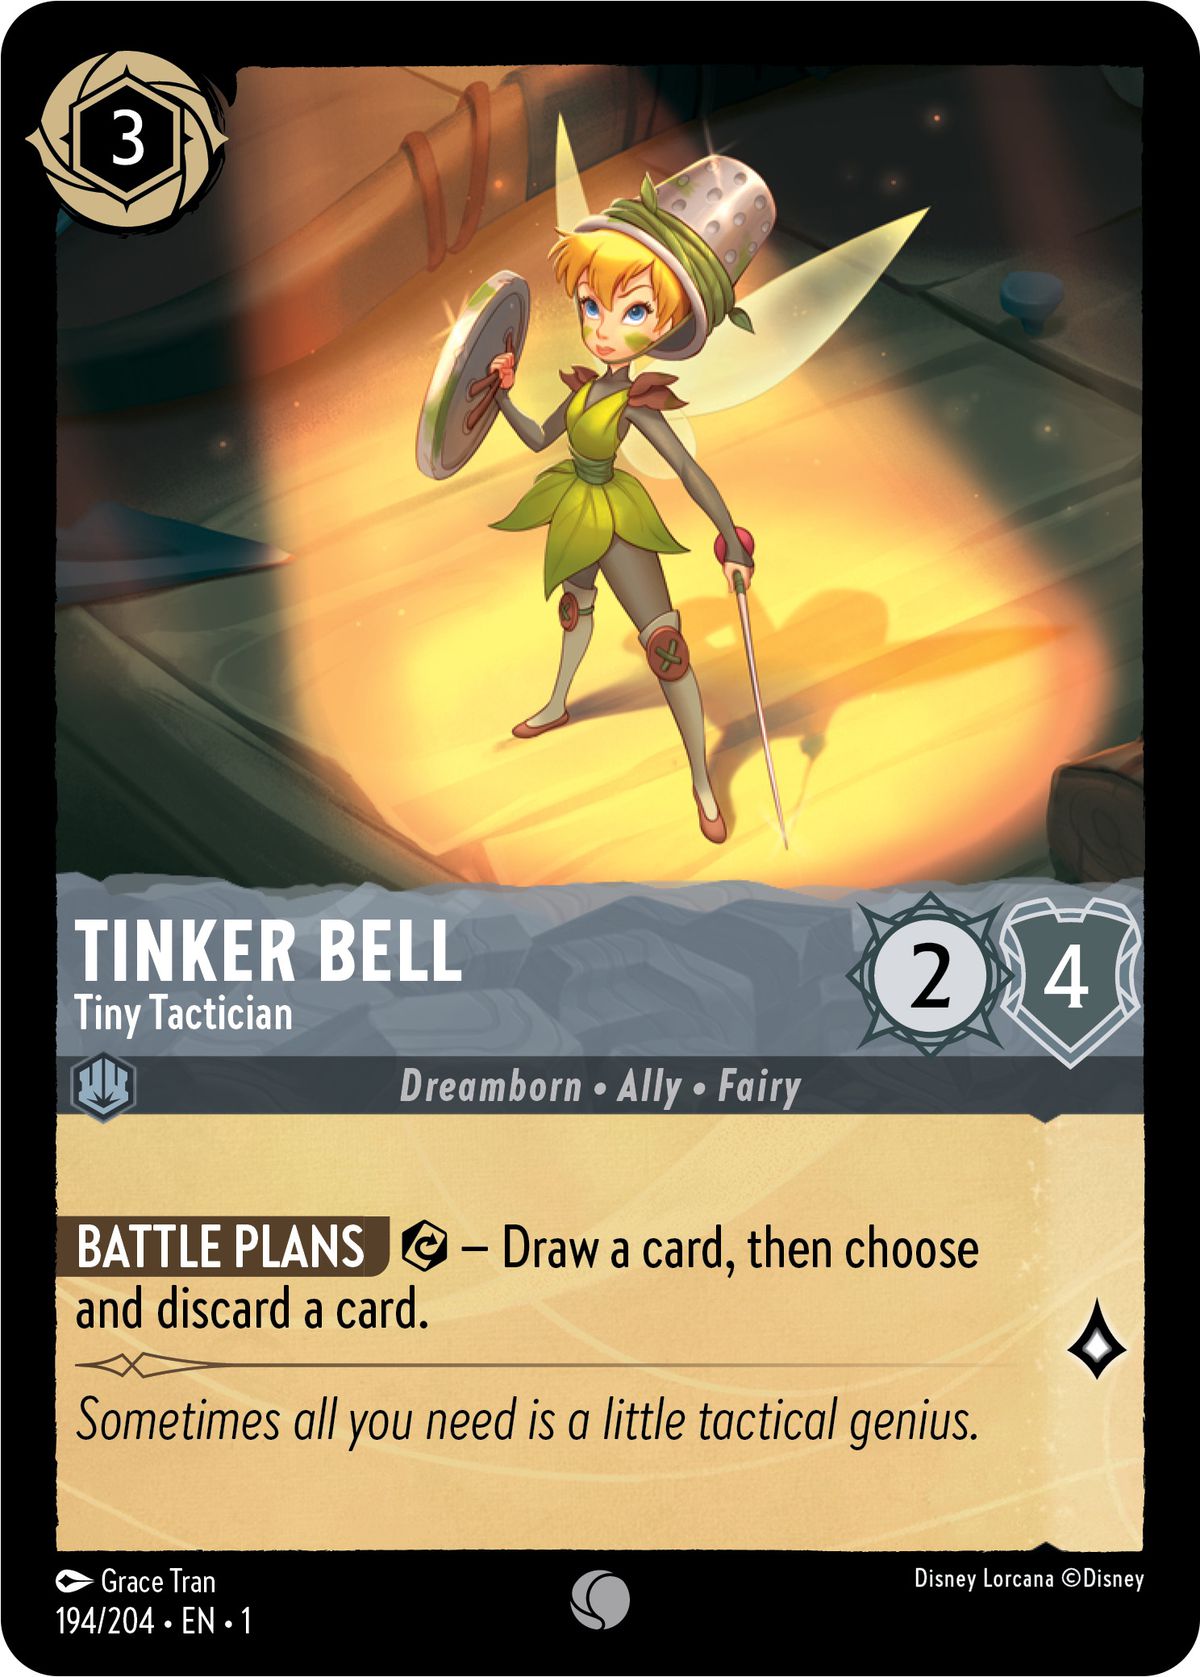 Tinkerbell, piccolo tattico, è un barlume - un dramborn, alleato, fata - con 2/4.  Quando esercitata, permette al giocatore di pescare una carta e poi scegliere e scartare un'altra carta.  Vale una lore durante la ricerca.